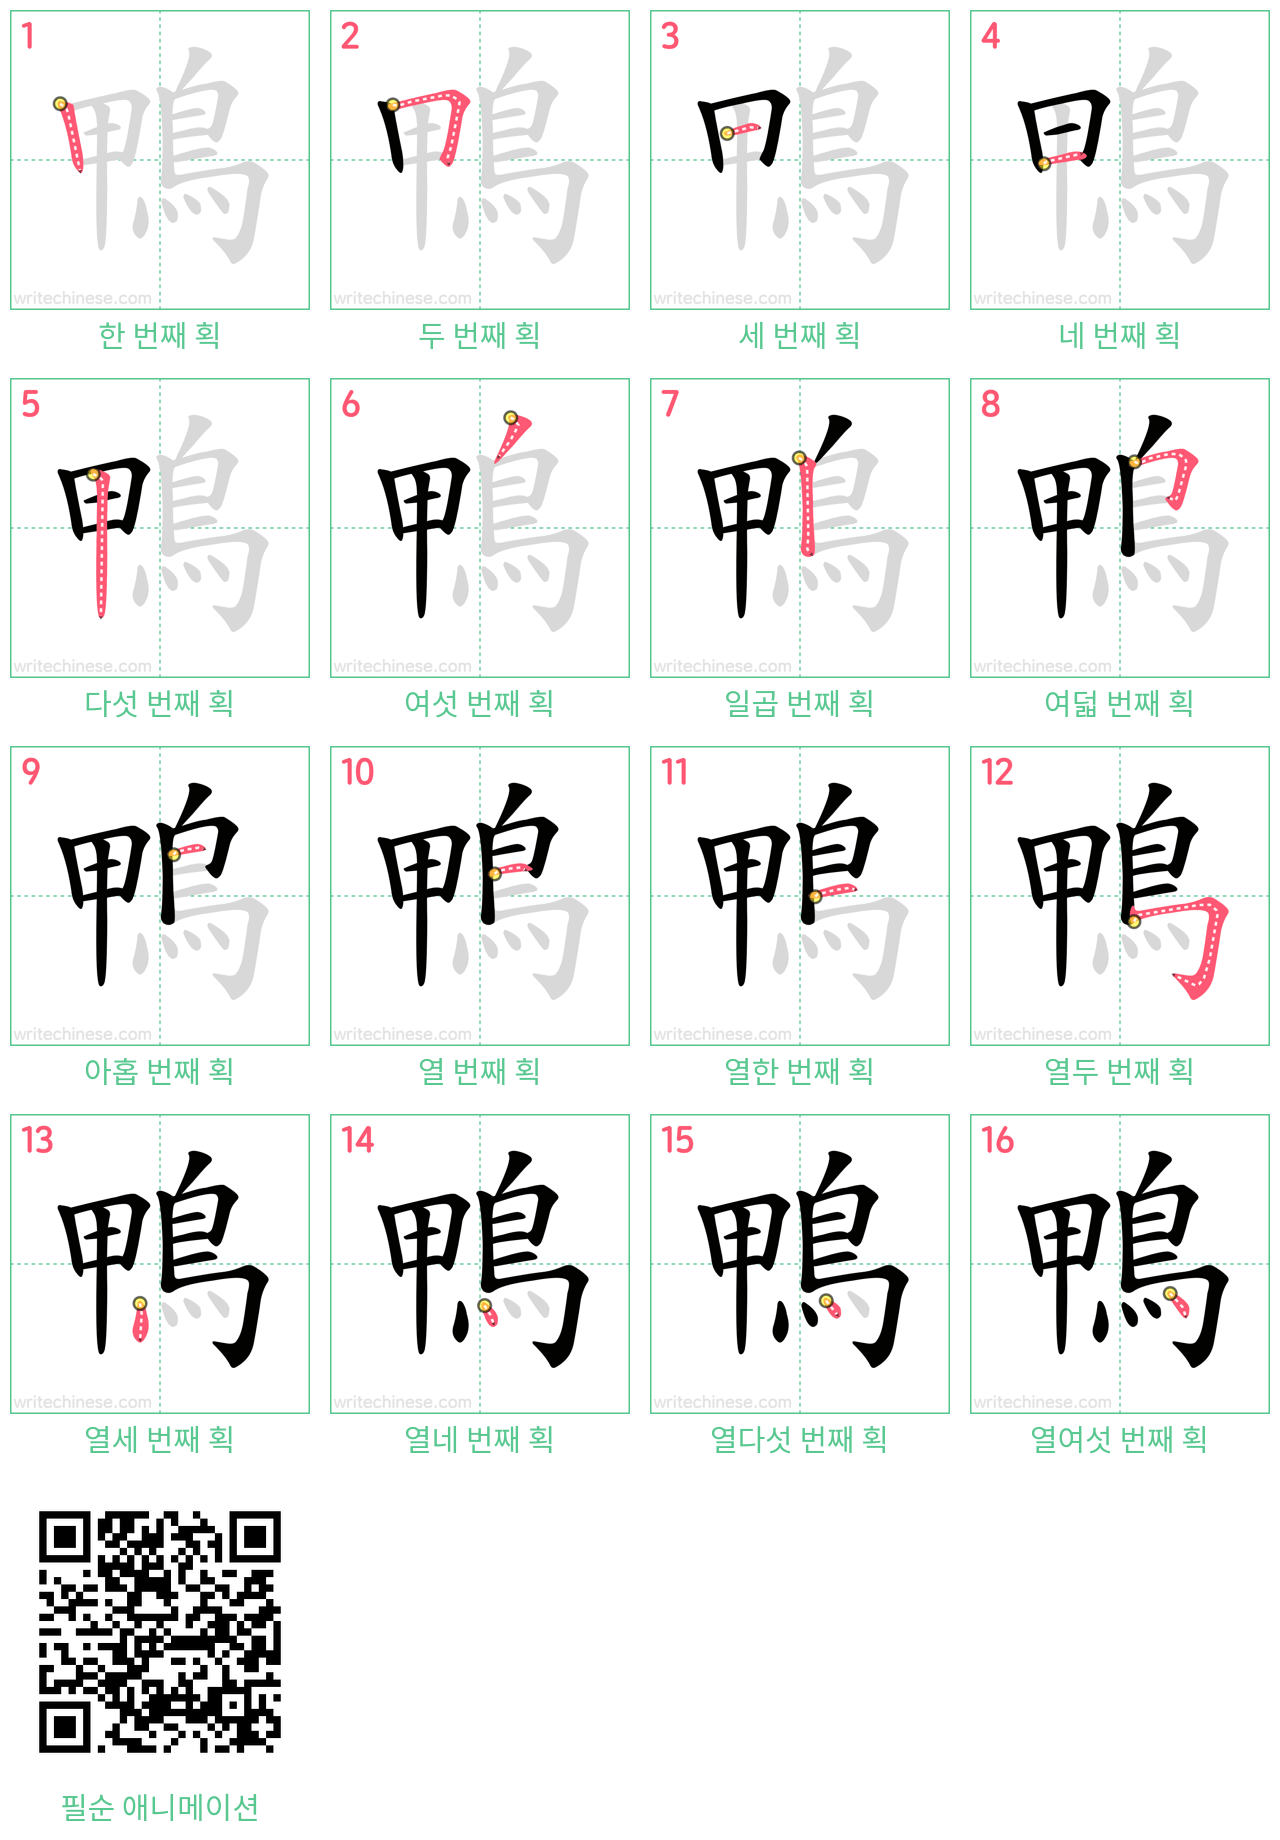 鴨 step-by-step stroke order diagrams